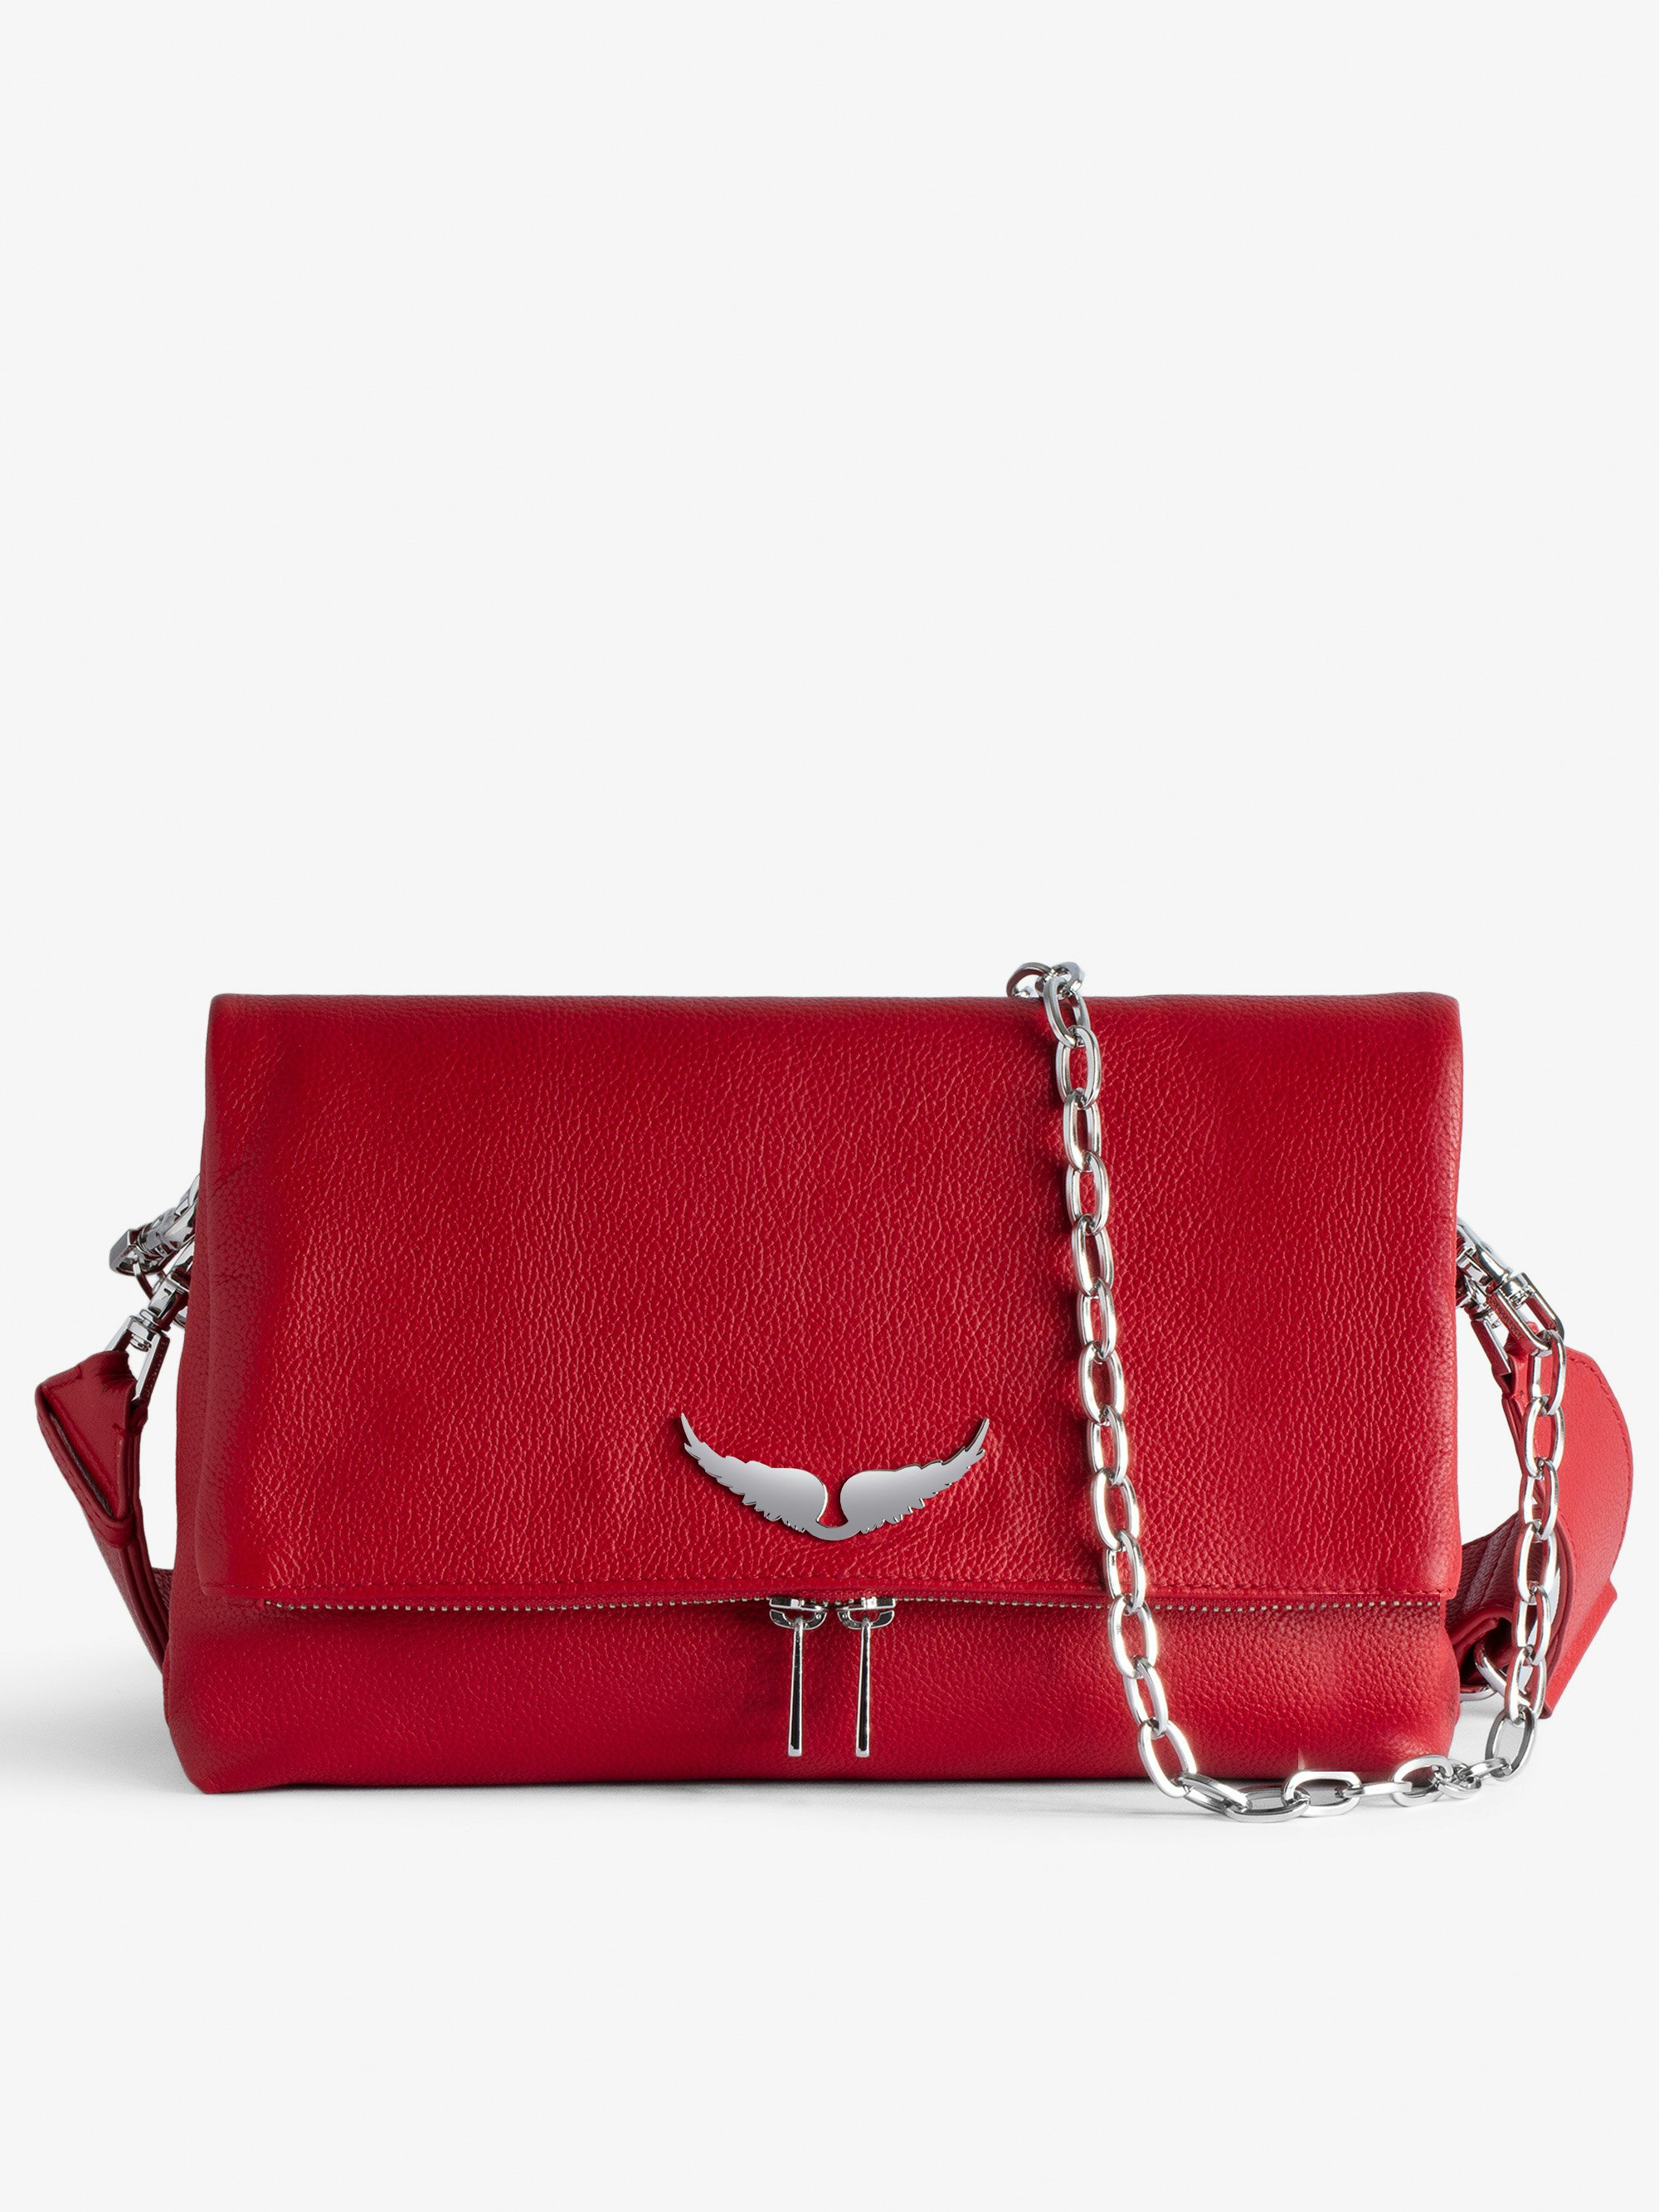 Tasche Rocky - Tasche aus genarbtem Leder in Rot mit Schulterriemen und Flügel-Charm für Damen